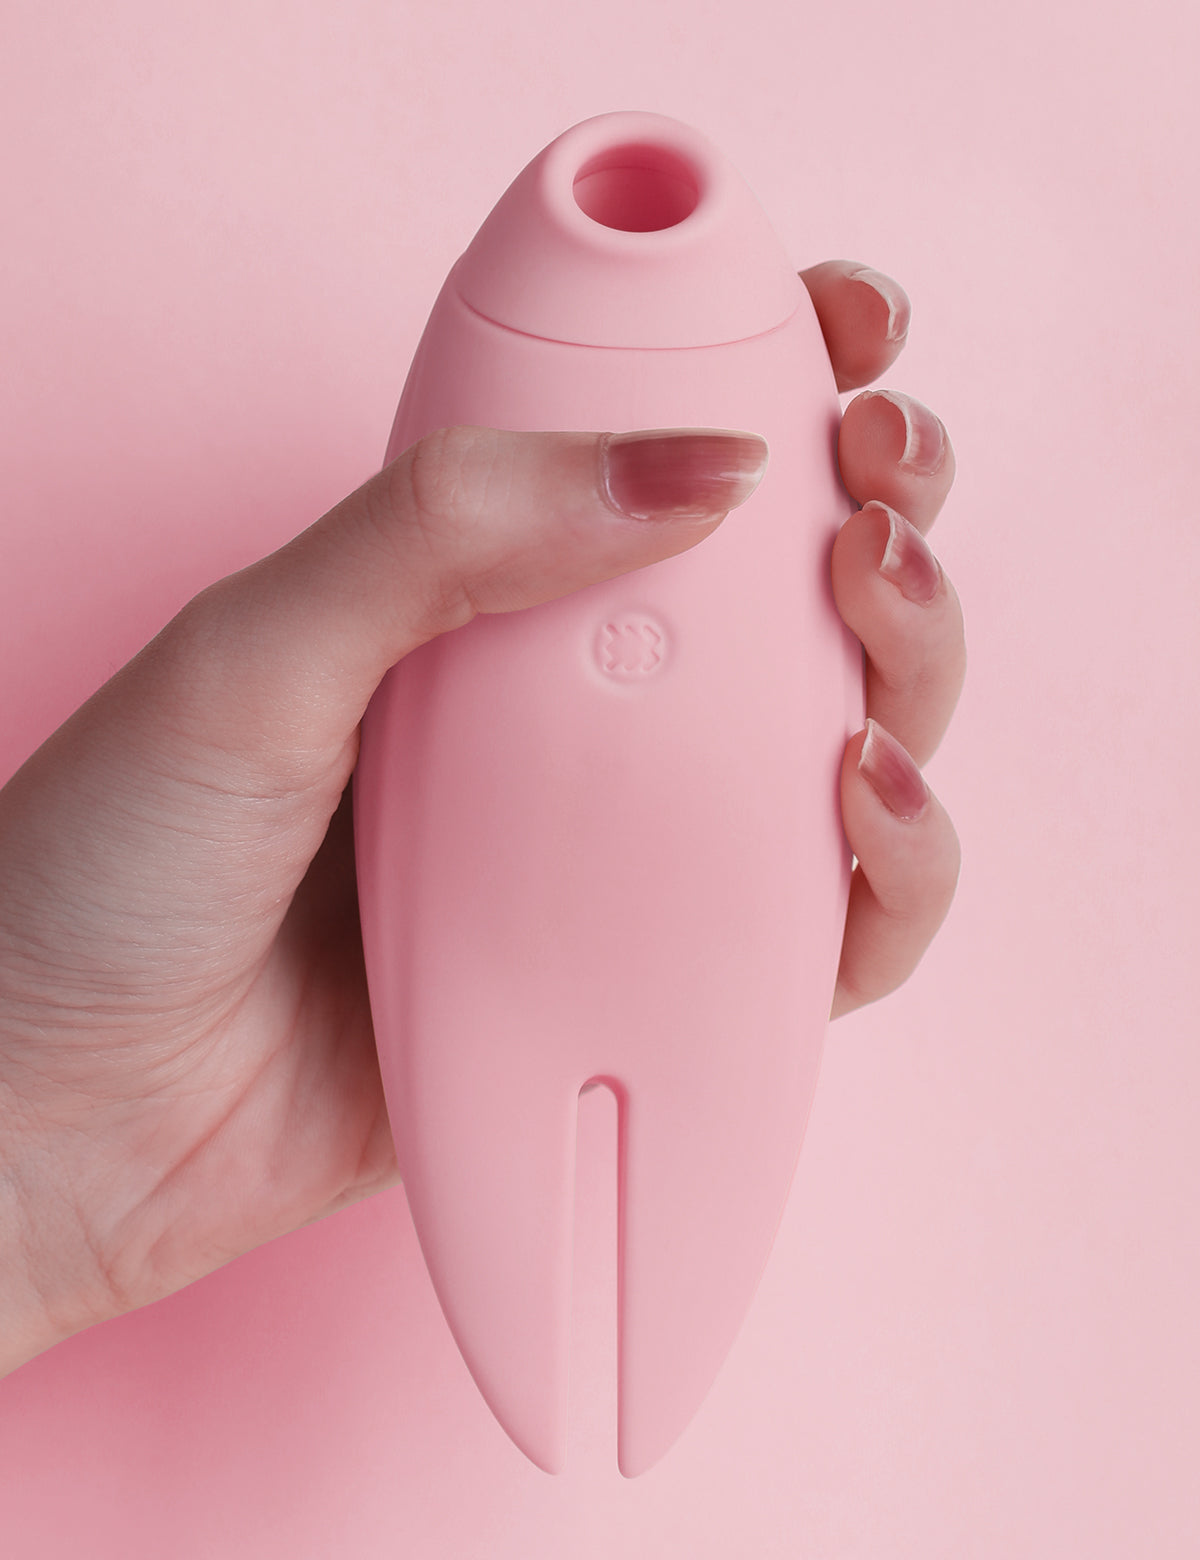 ToyCod ポポトリバイブ 吸引 舌舐め 乳首挟む ピンク 大人のおもちゃ